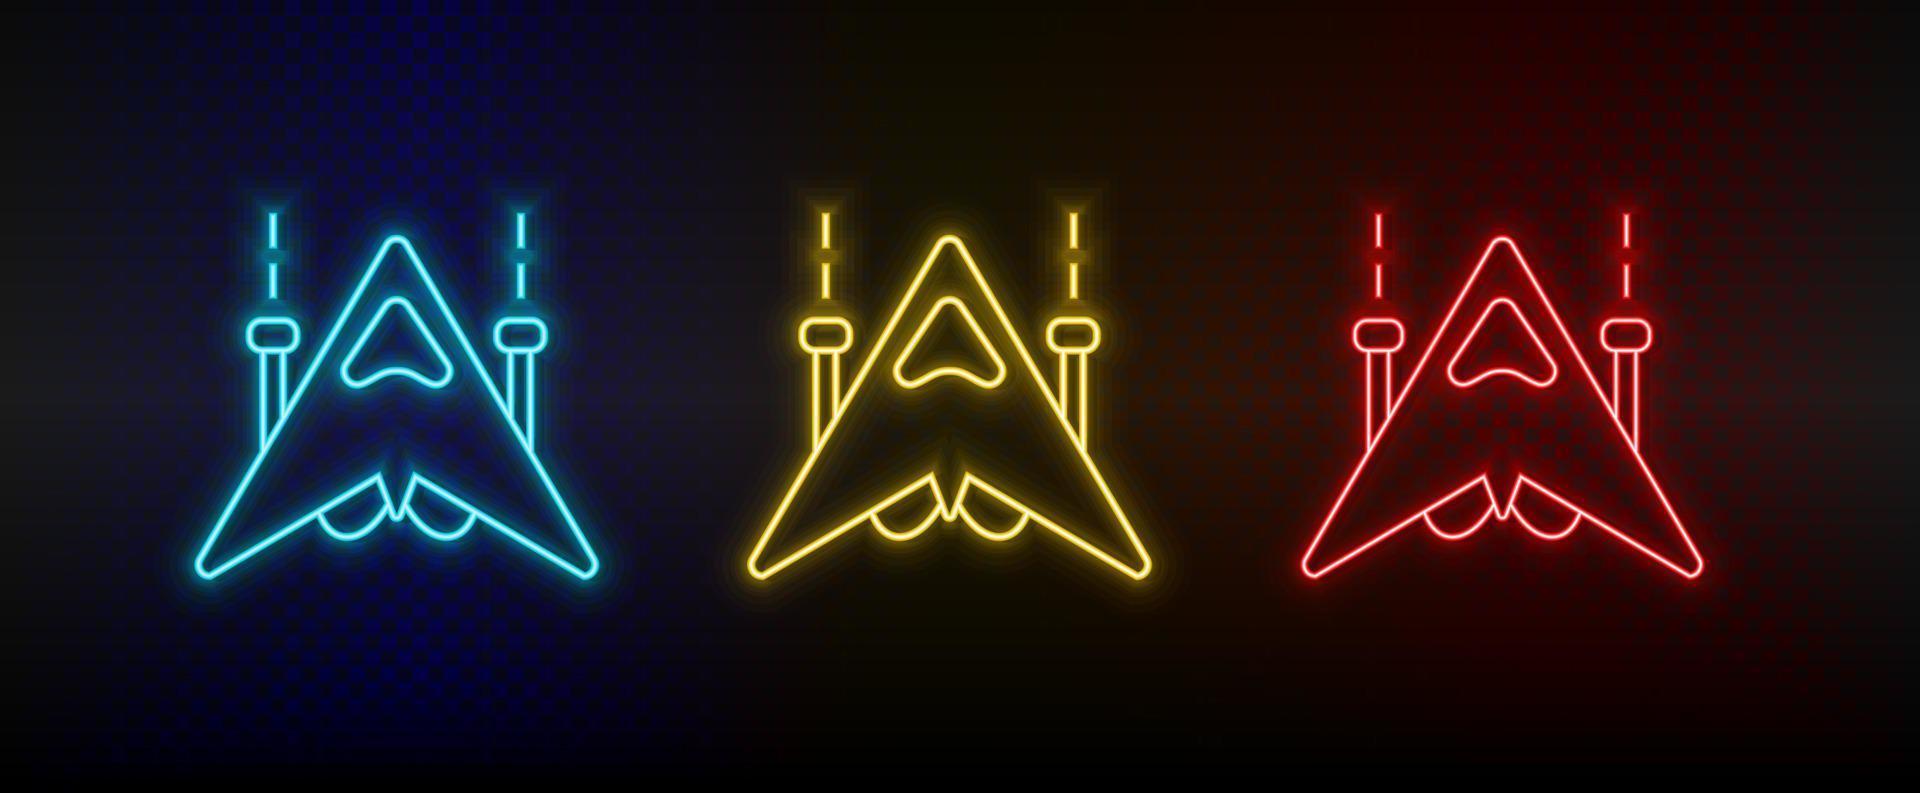 Neon-Symbole. geschaukeltes Schiff Raumschiff Retro. Satz von roten, blauen, gelben Neonvektorsymbolen auf dunklem Hintergrund vektor